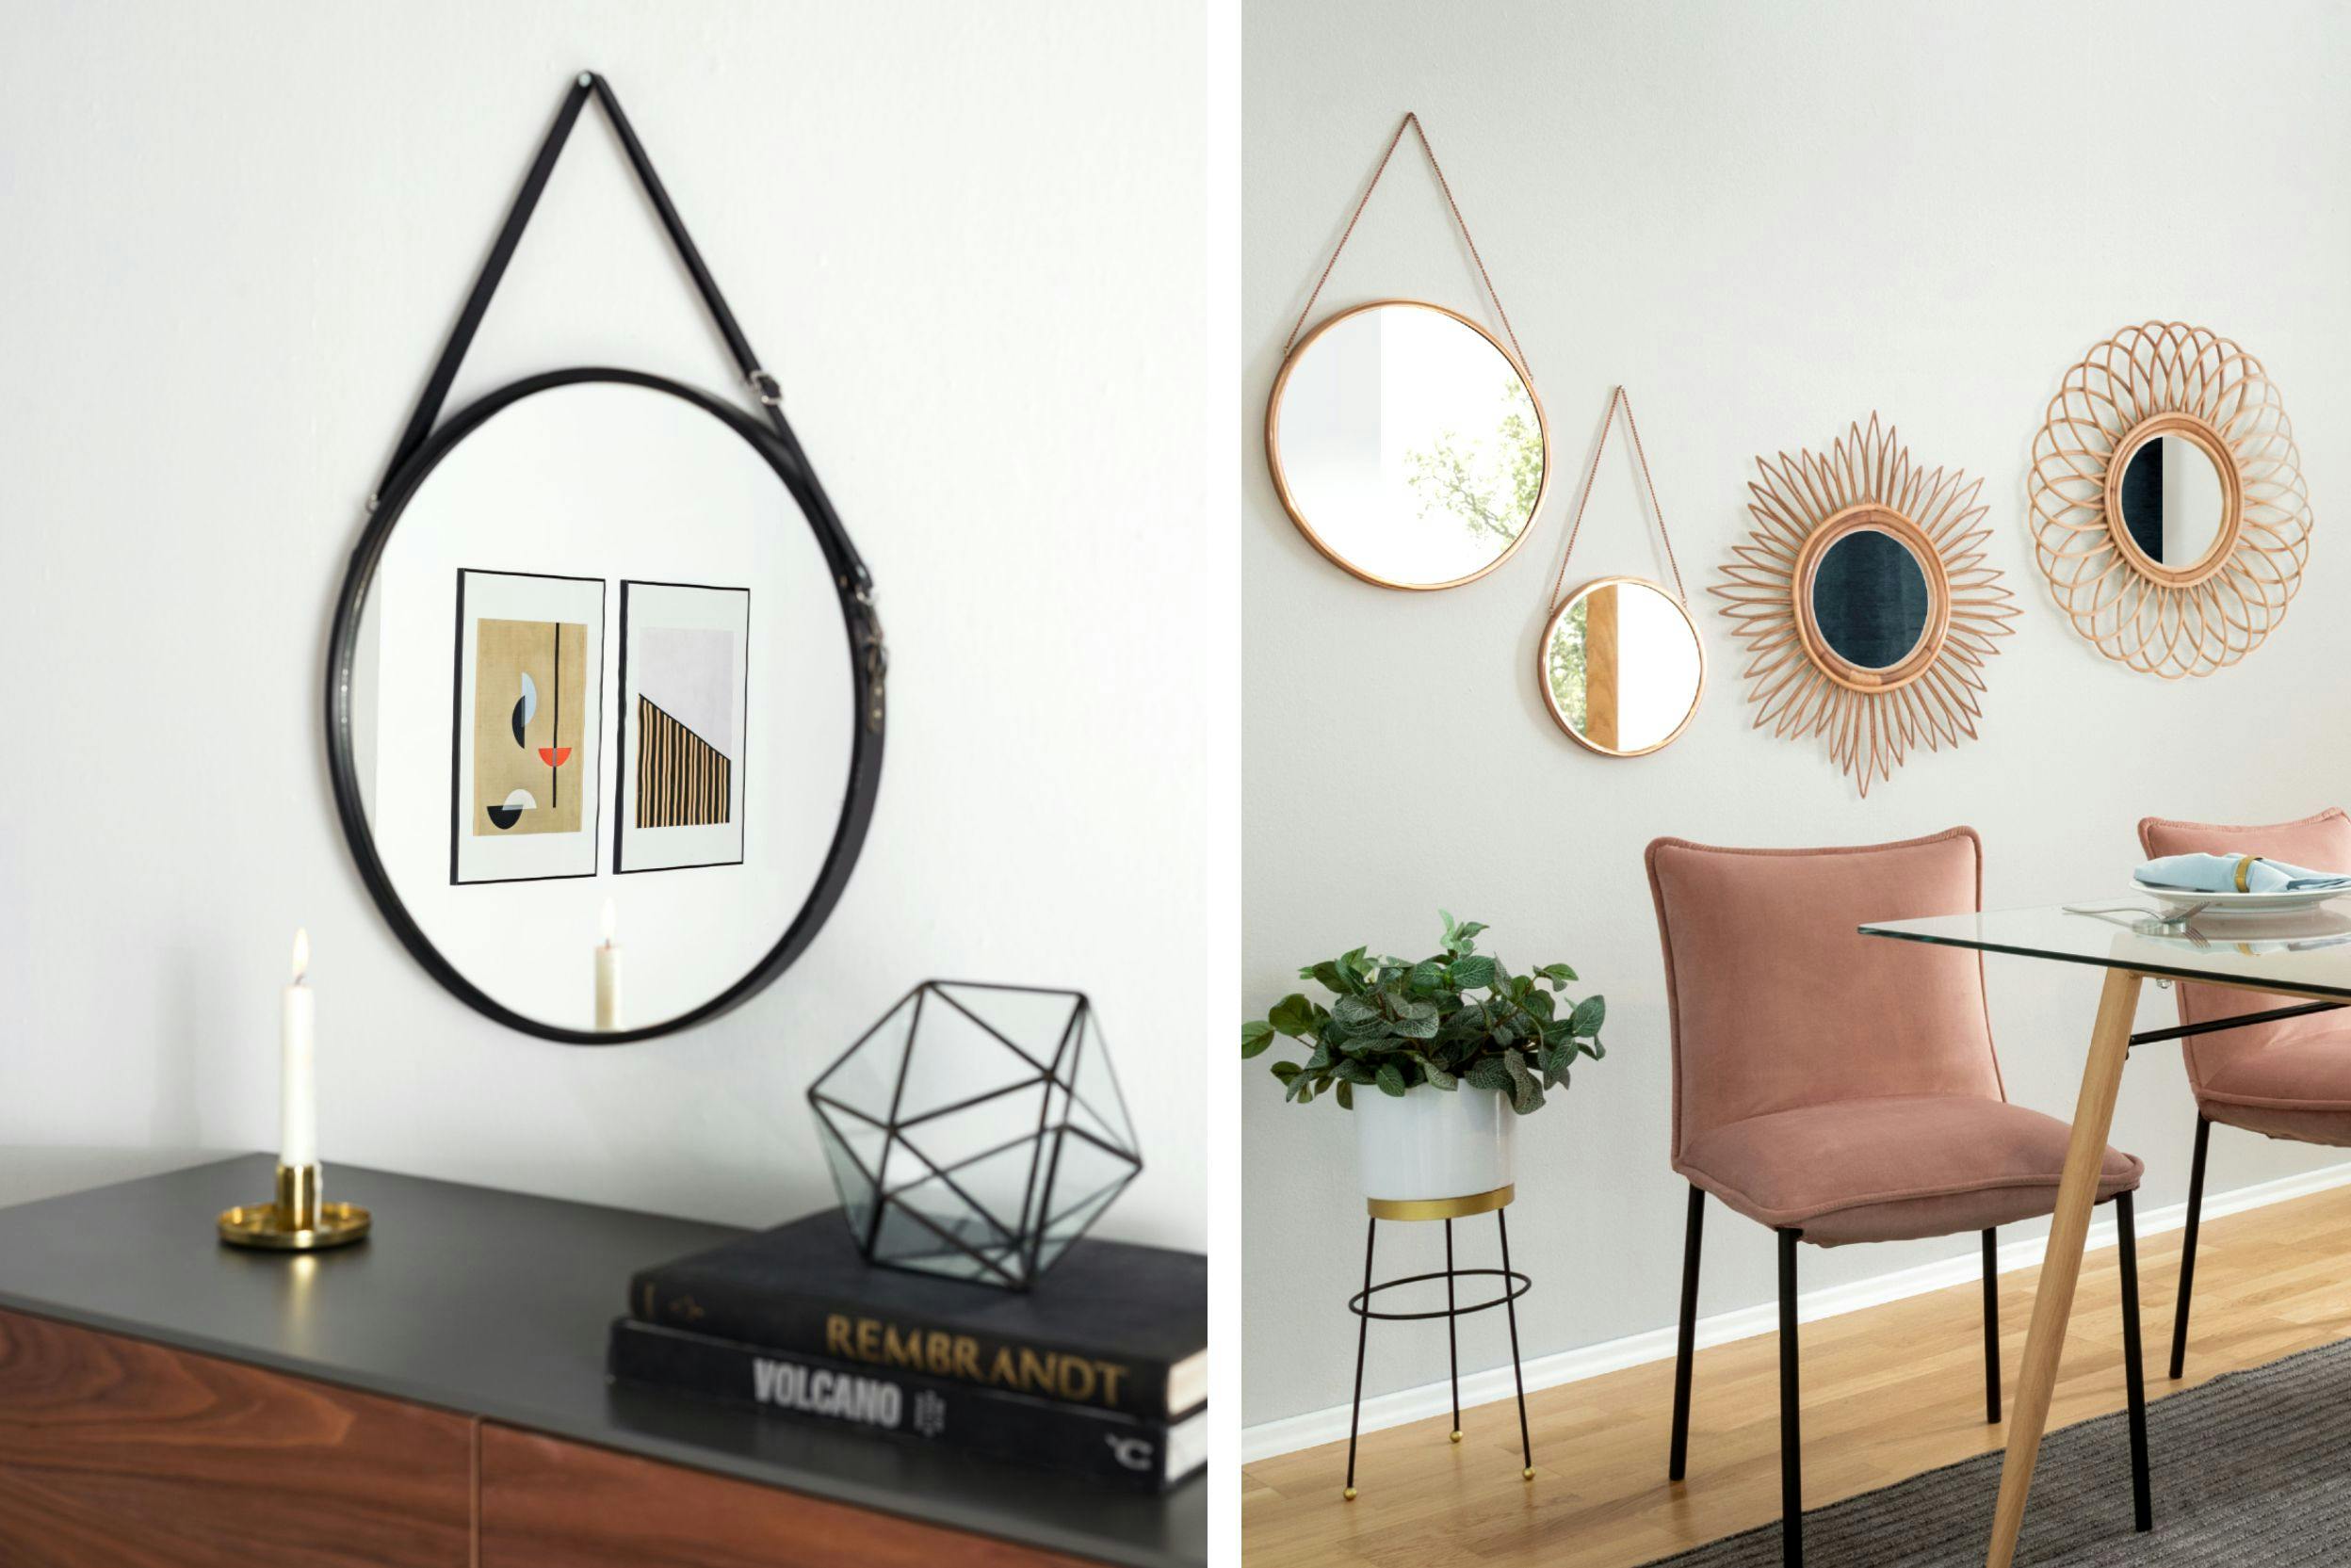 Combo de deux photos de miroirs muraux, L'un au-dessus d'une table avec une bougie et objets déco, l'autre avec quatre miroirs muraux dorés près d'une plante, d'une table et de chaises